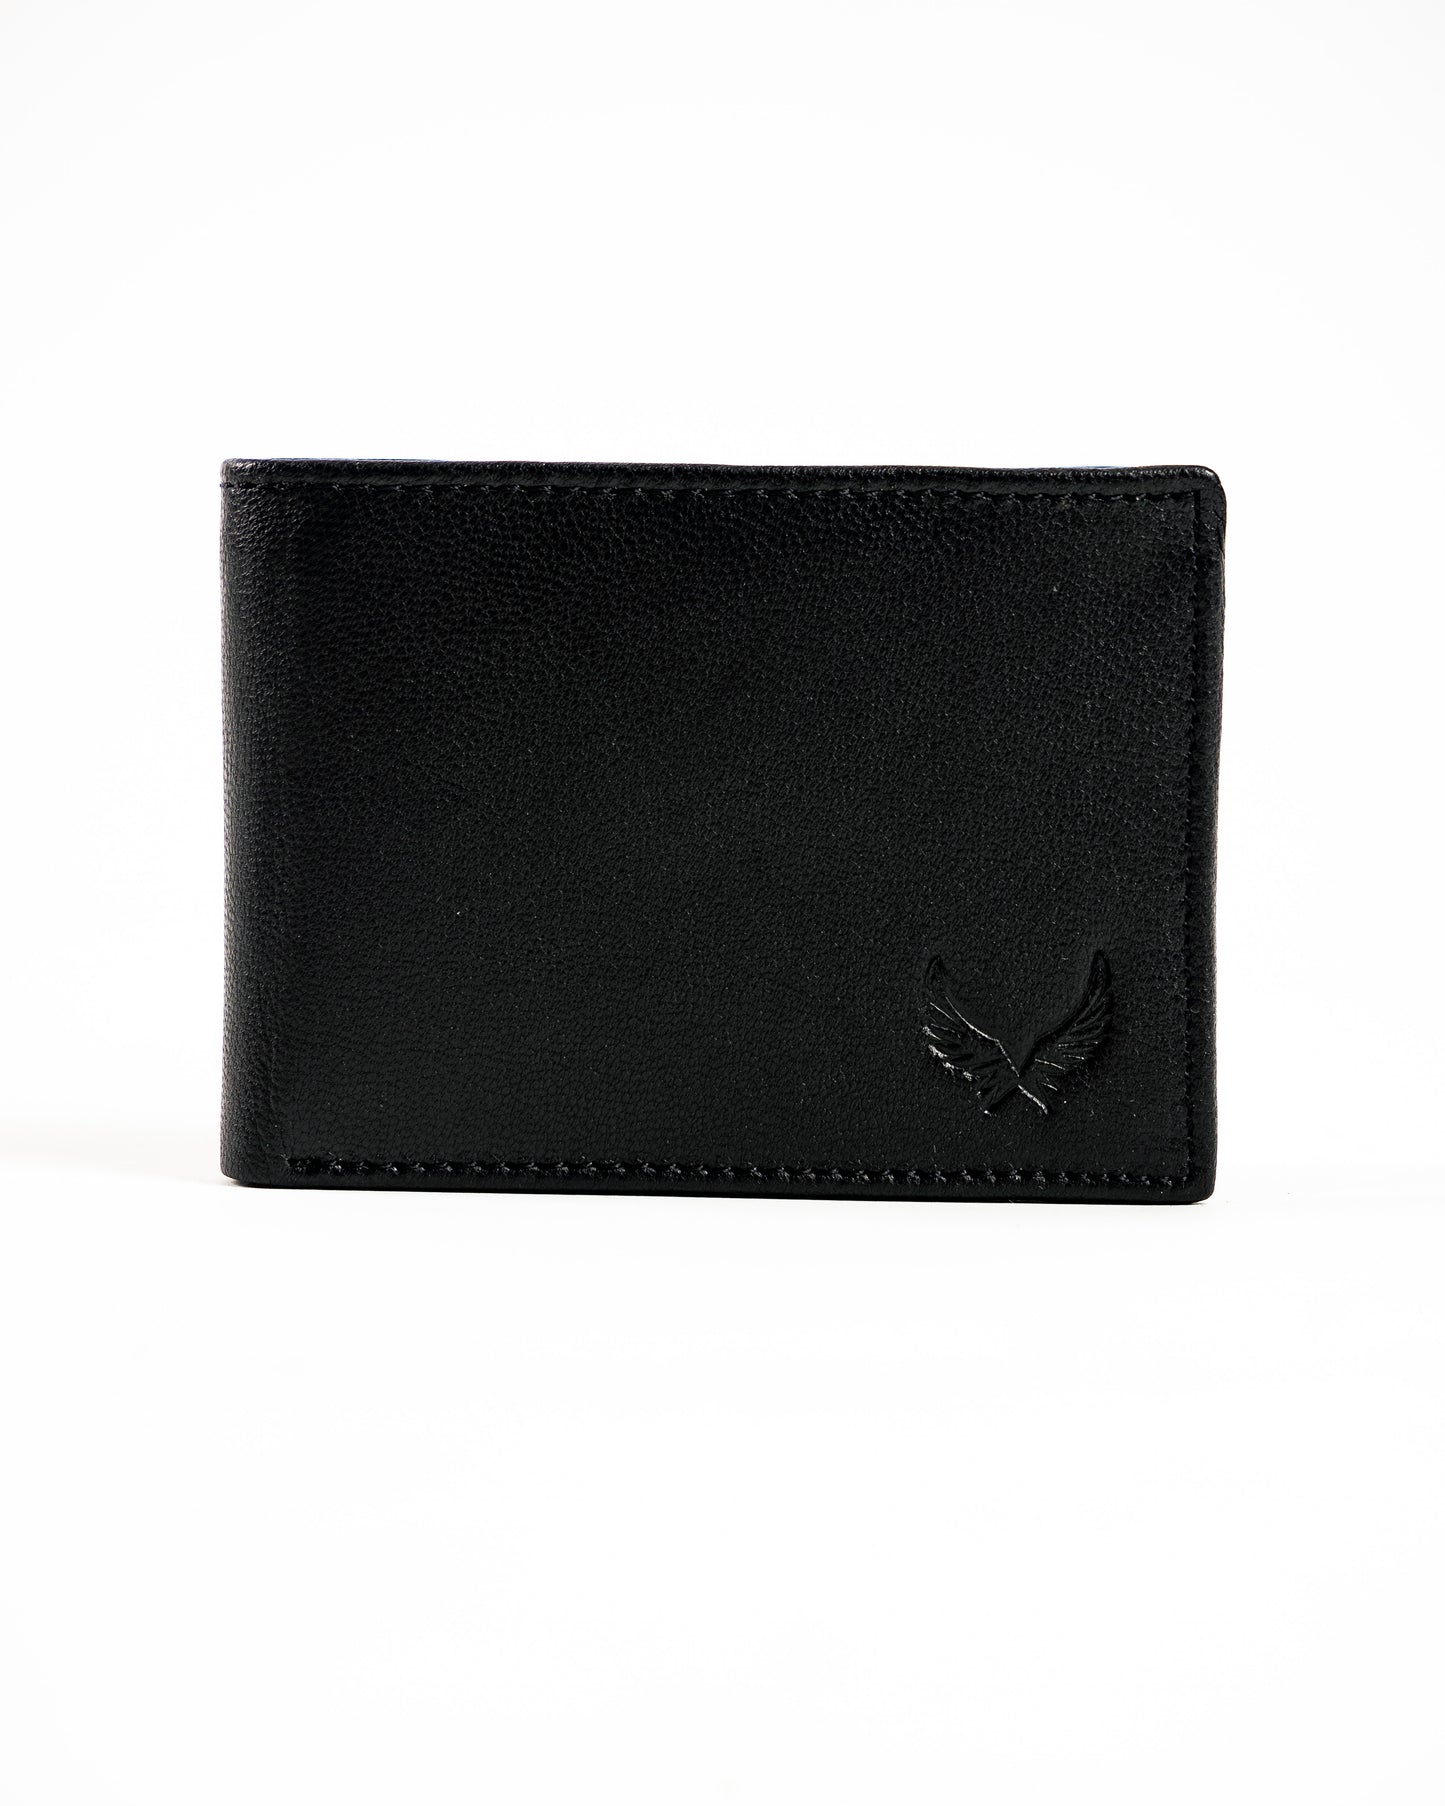 Wallet (AD01, WW)